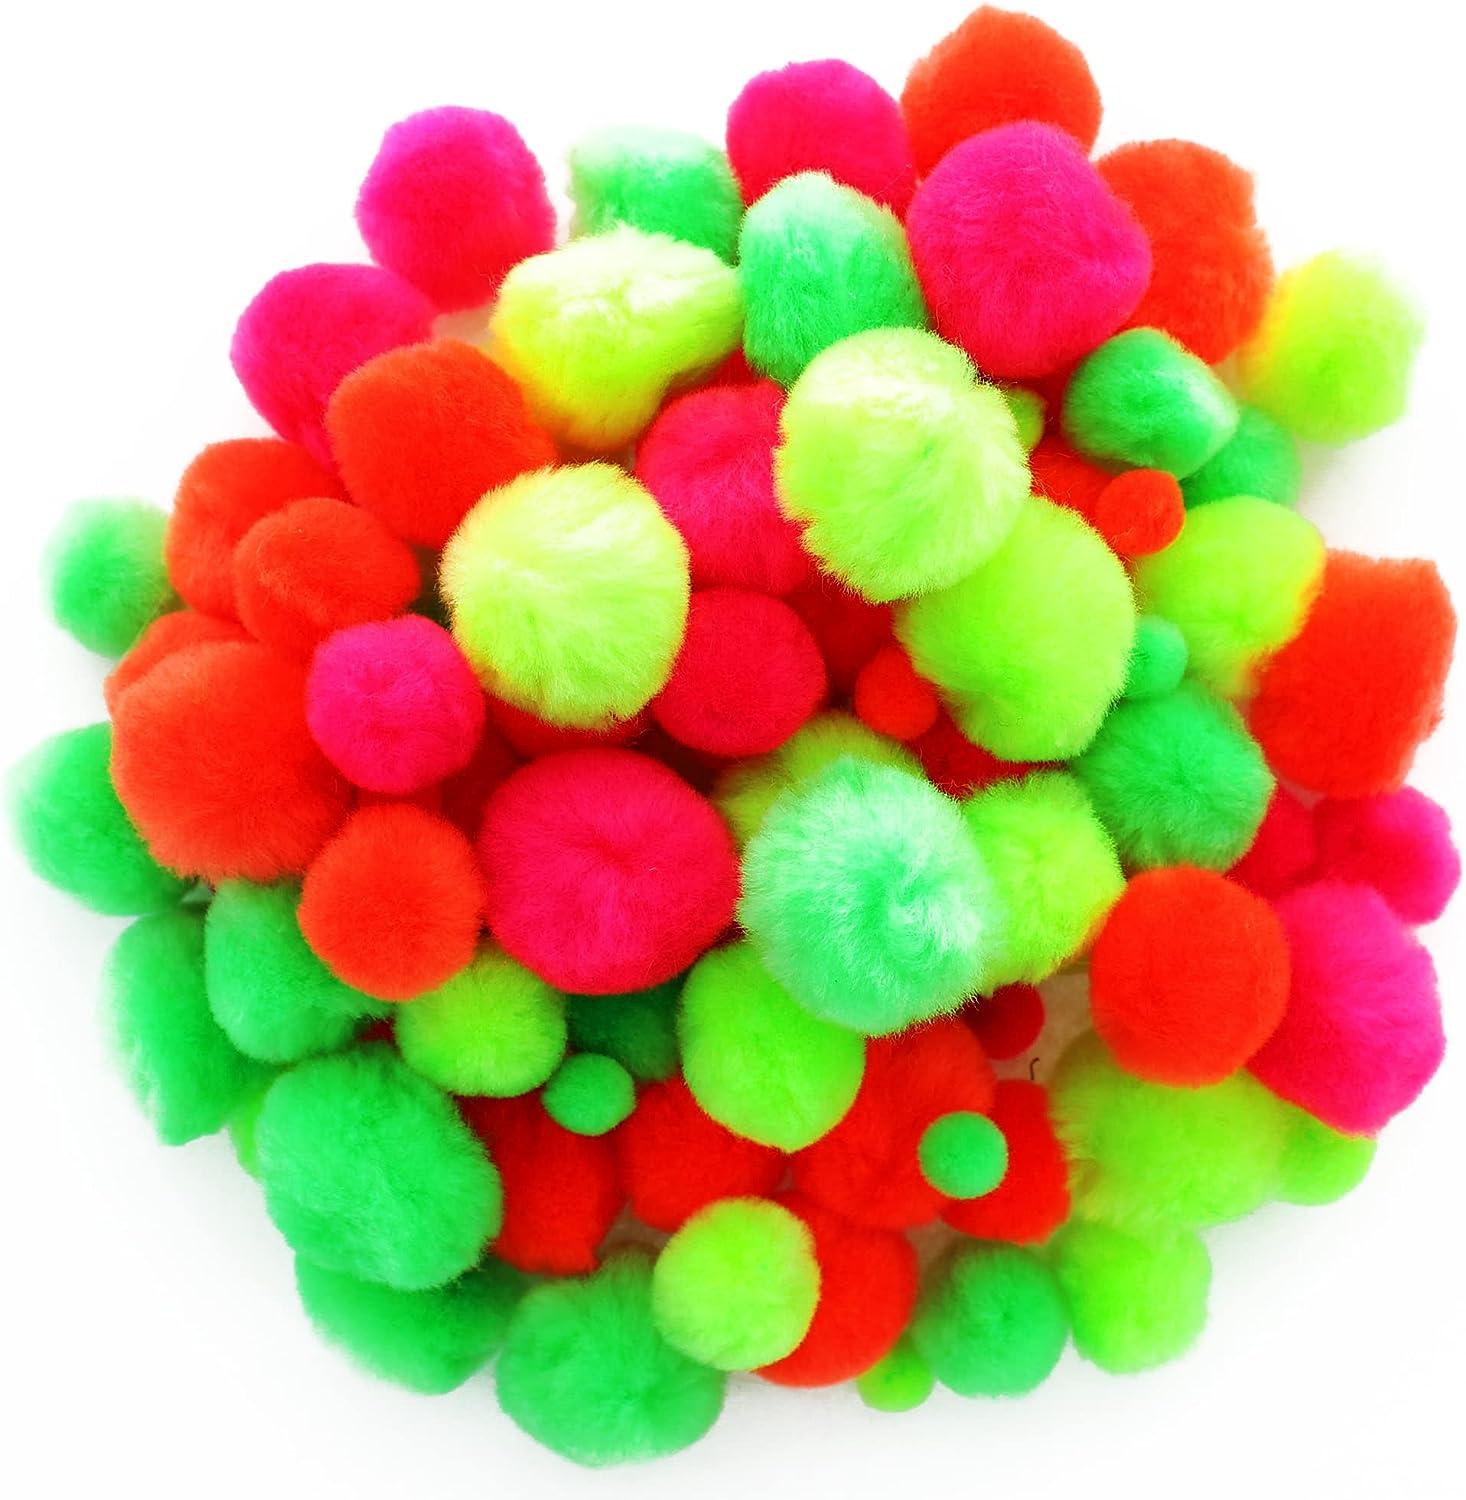 Colorful Craft Pom Poms